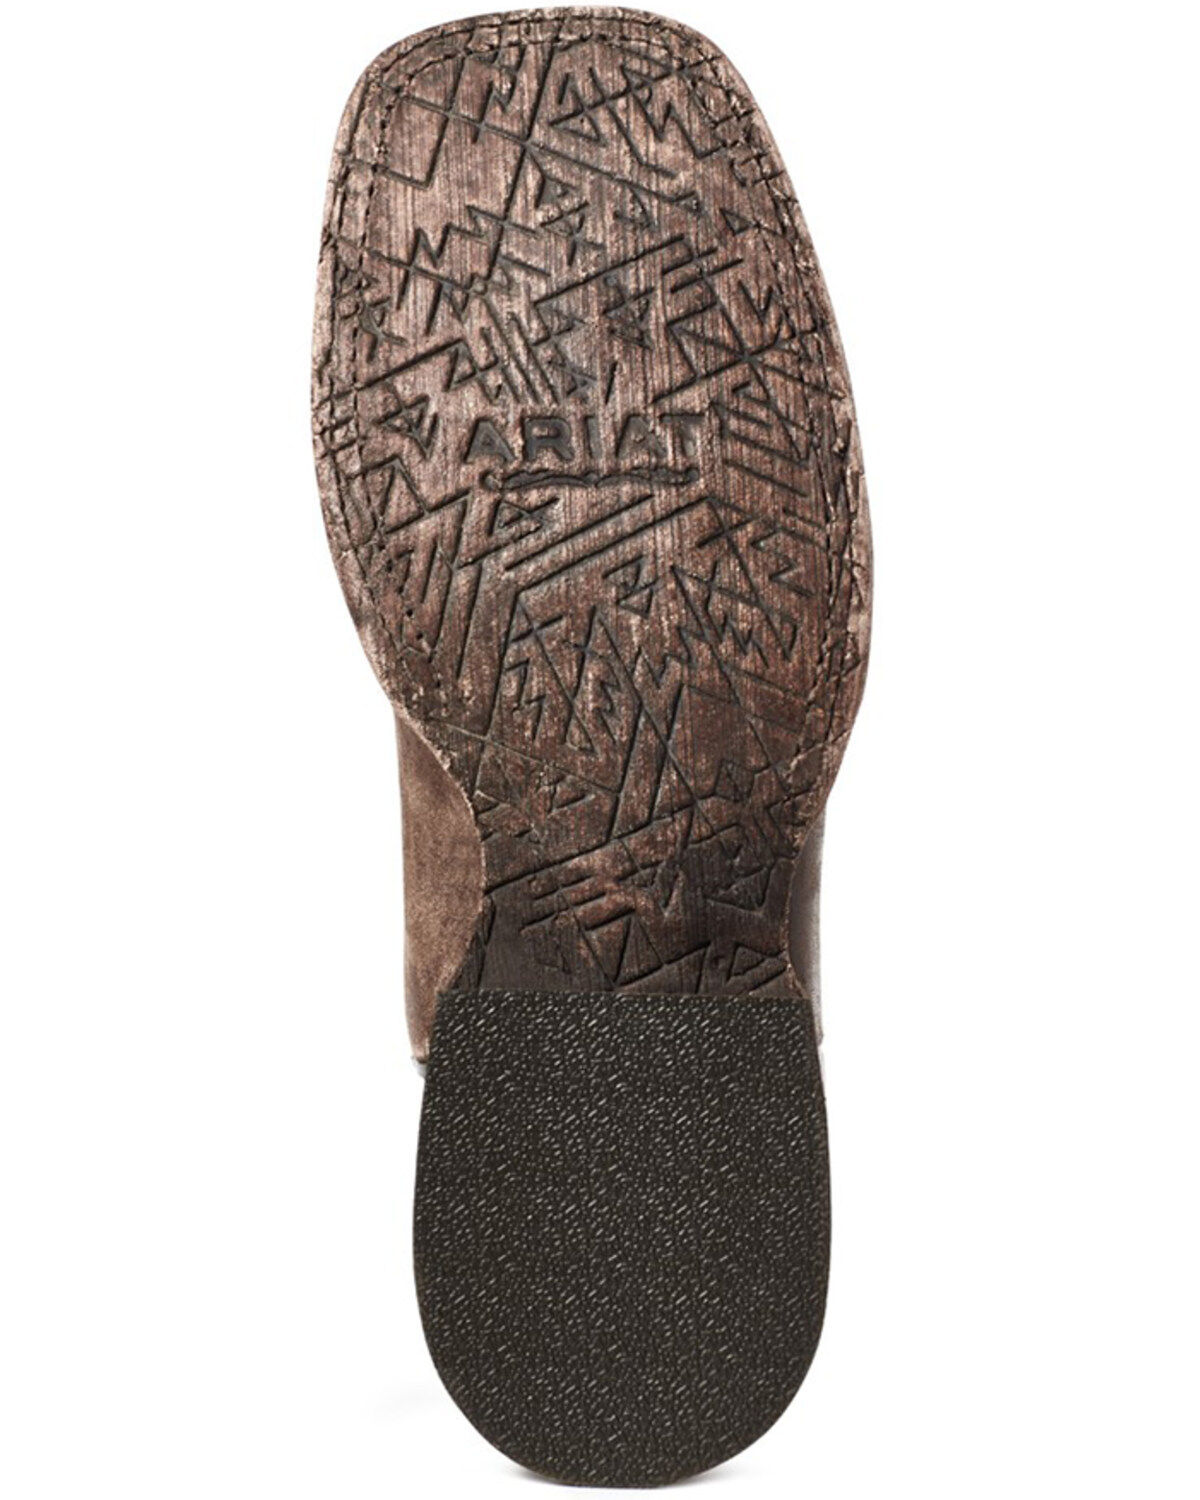 Ariat Women´s Savannah Boots Stiefel wasserdicht Stiefeletten Western Boot 